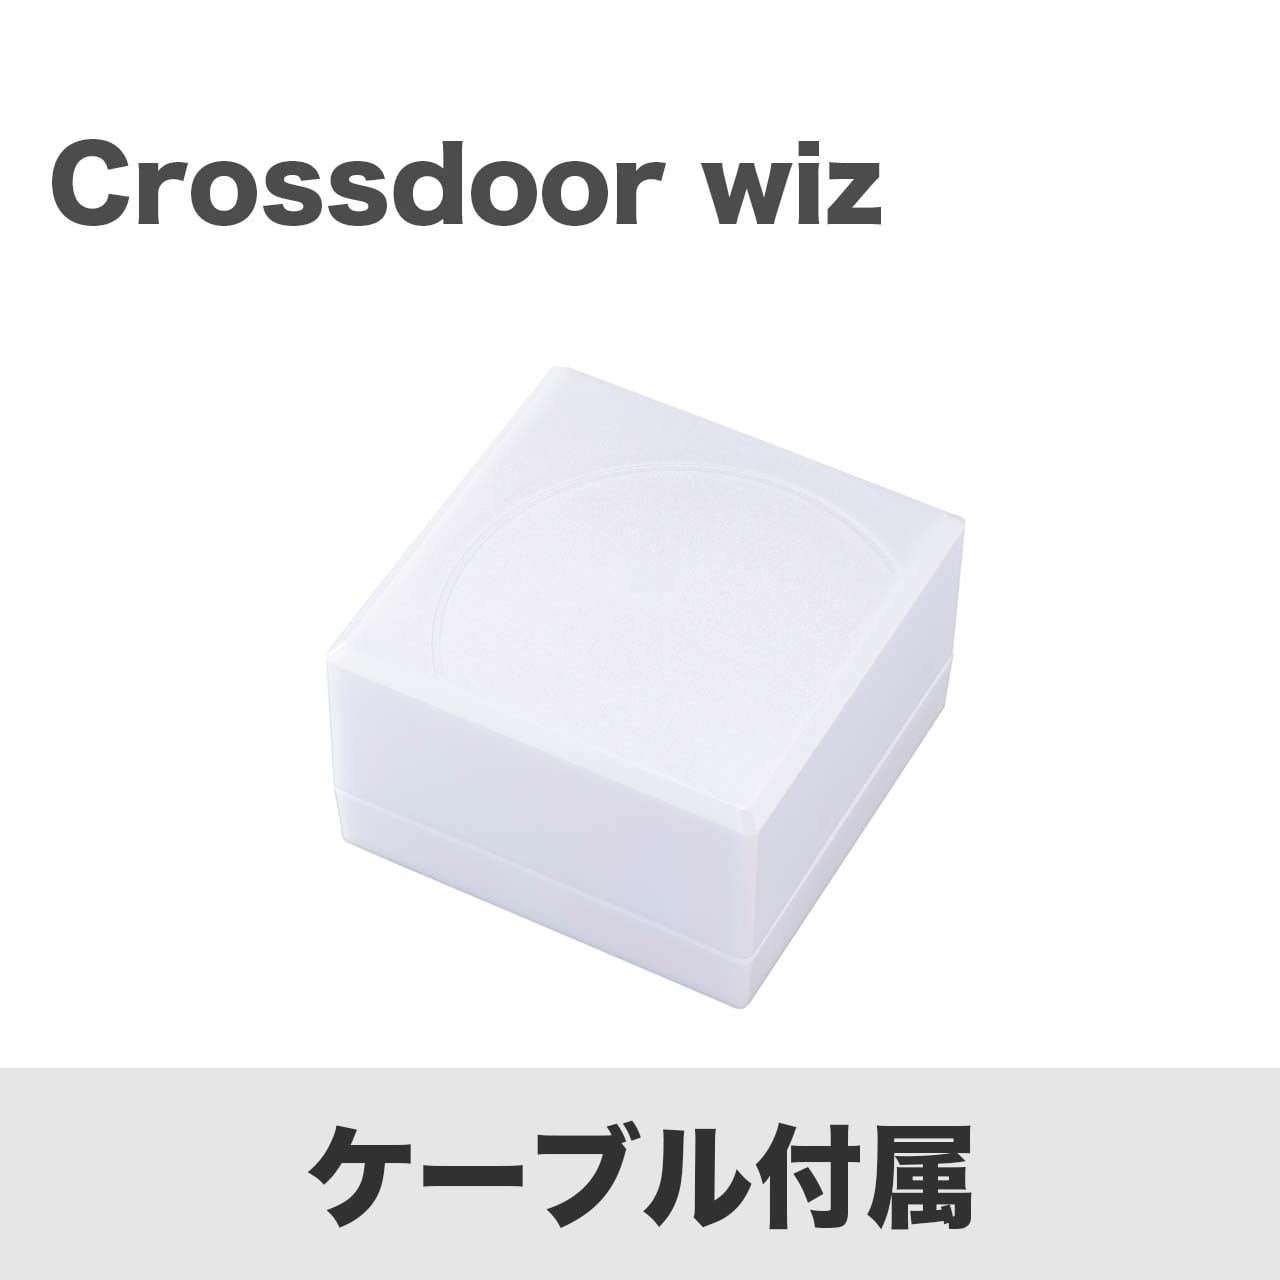 Crossdoor wiz（型番: CDW-01CA）